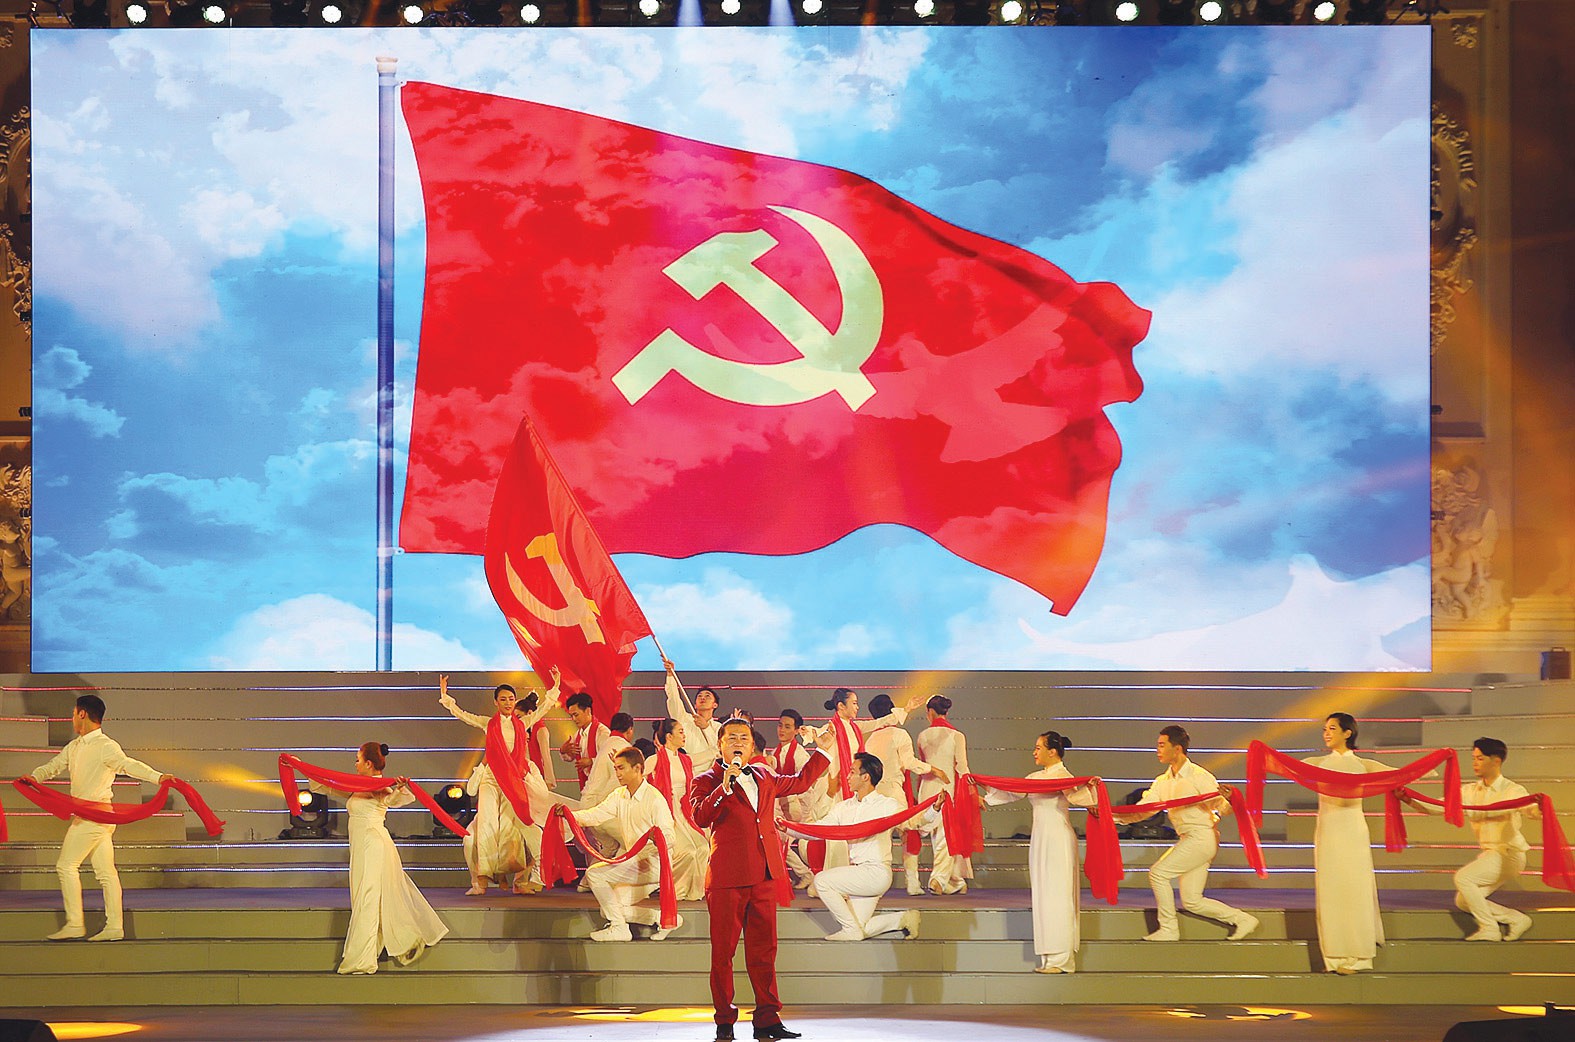 Đảng Cộng sản Việt Nam: Đảng Cộng sản Việt Nam đã vươn lên là một đất nước phát triển và đầy sức mạnh với những thành tựu kinh tế, xã hội đáng kinh ngạc. Cuộc cách mạng công nghiệp 4.0 đang chính thức đến Việt Nam, mở ra một tương lai tươi sáng cho đất nước và nhân dân. Hãy cùng nhau hướng đến những thành công sau này của quốc gia vùng lên mạnh mẽ trong tương lai.